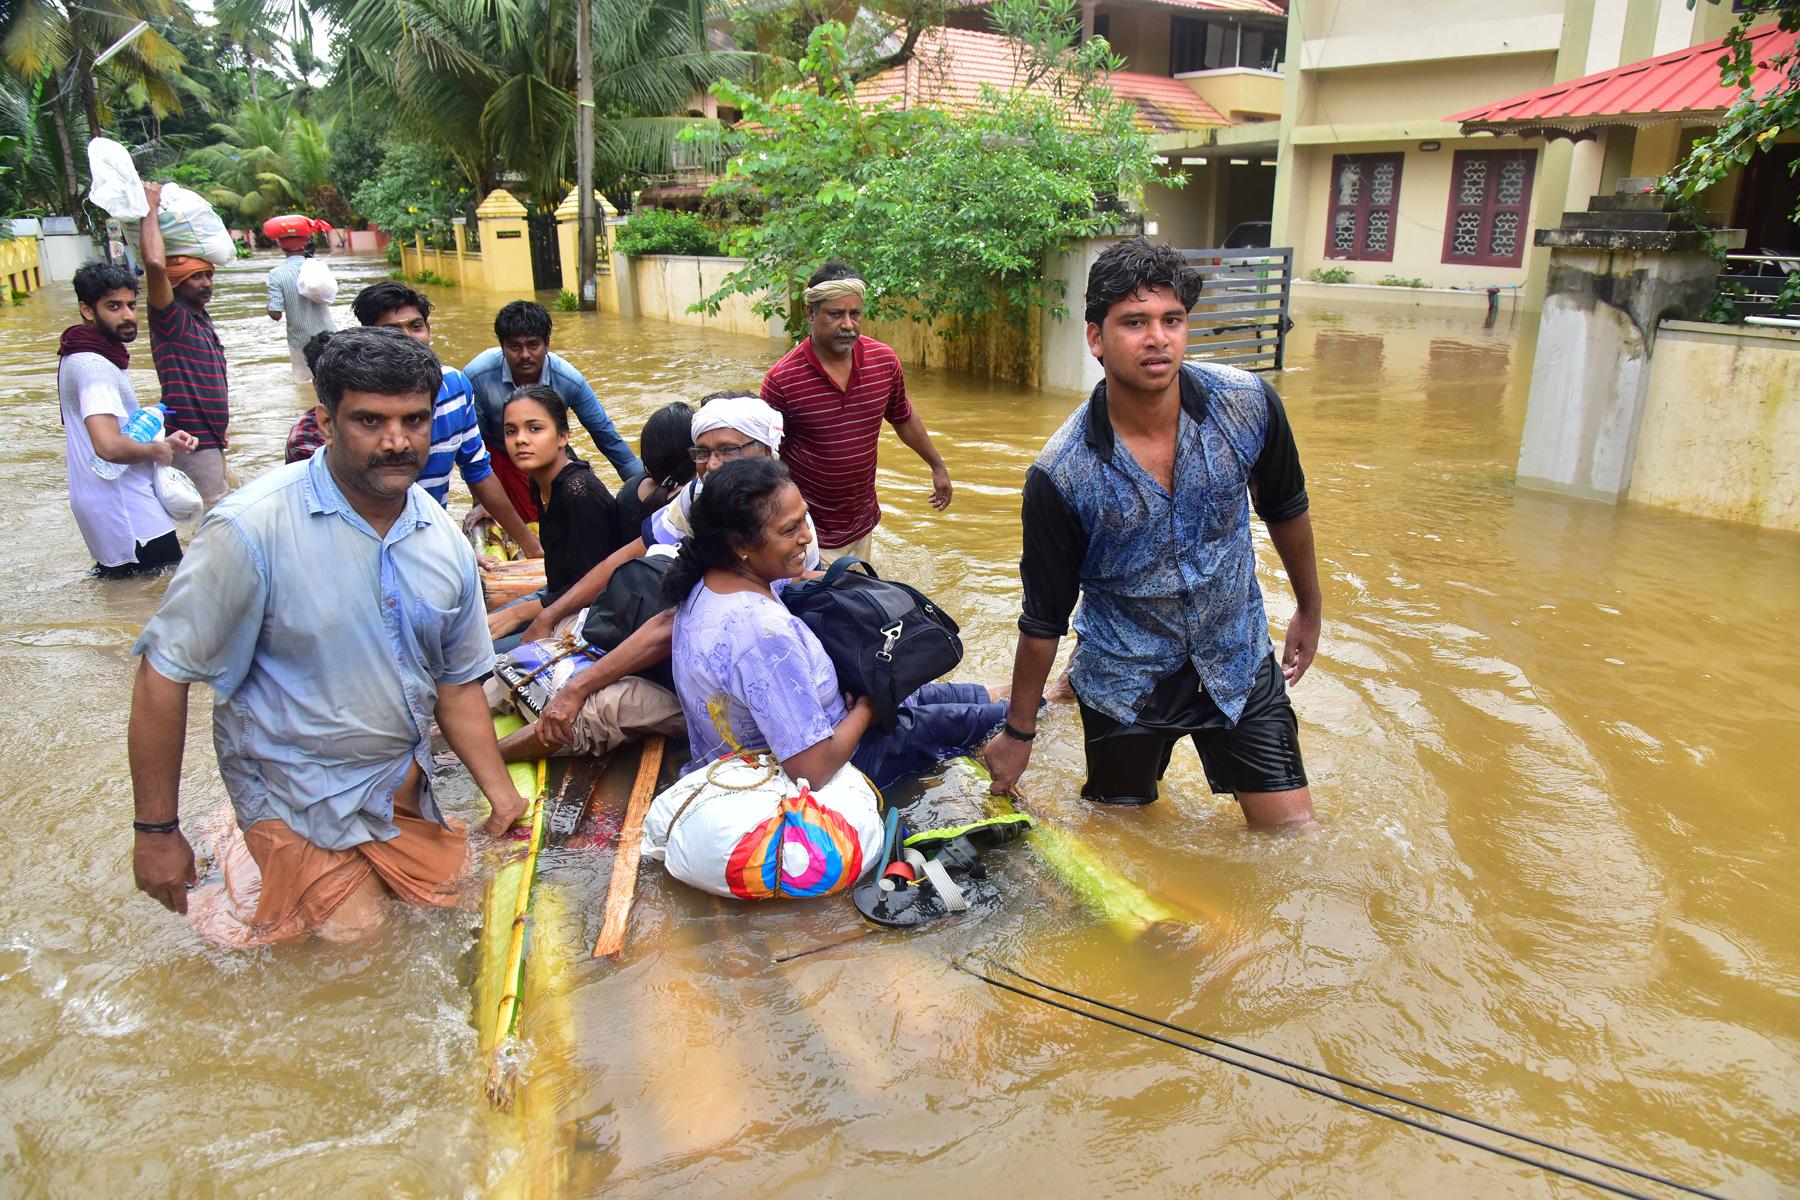 Rettungskräfte retten nach schweren Überschwemmungen in Kerala (Indien) Menschen aus ihrer Notlage. Photo: Shishir Kurian/CSI